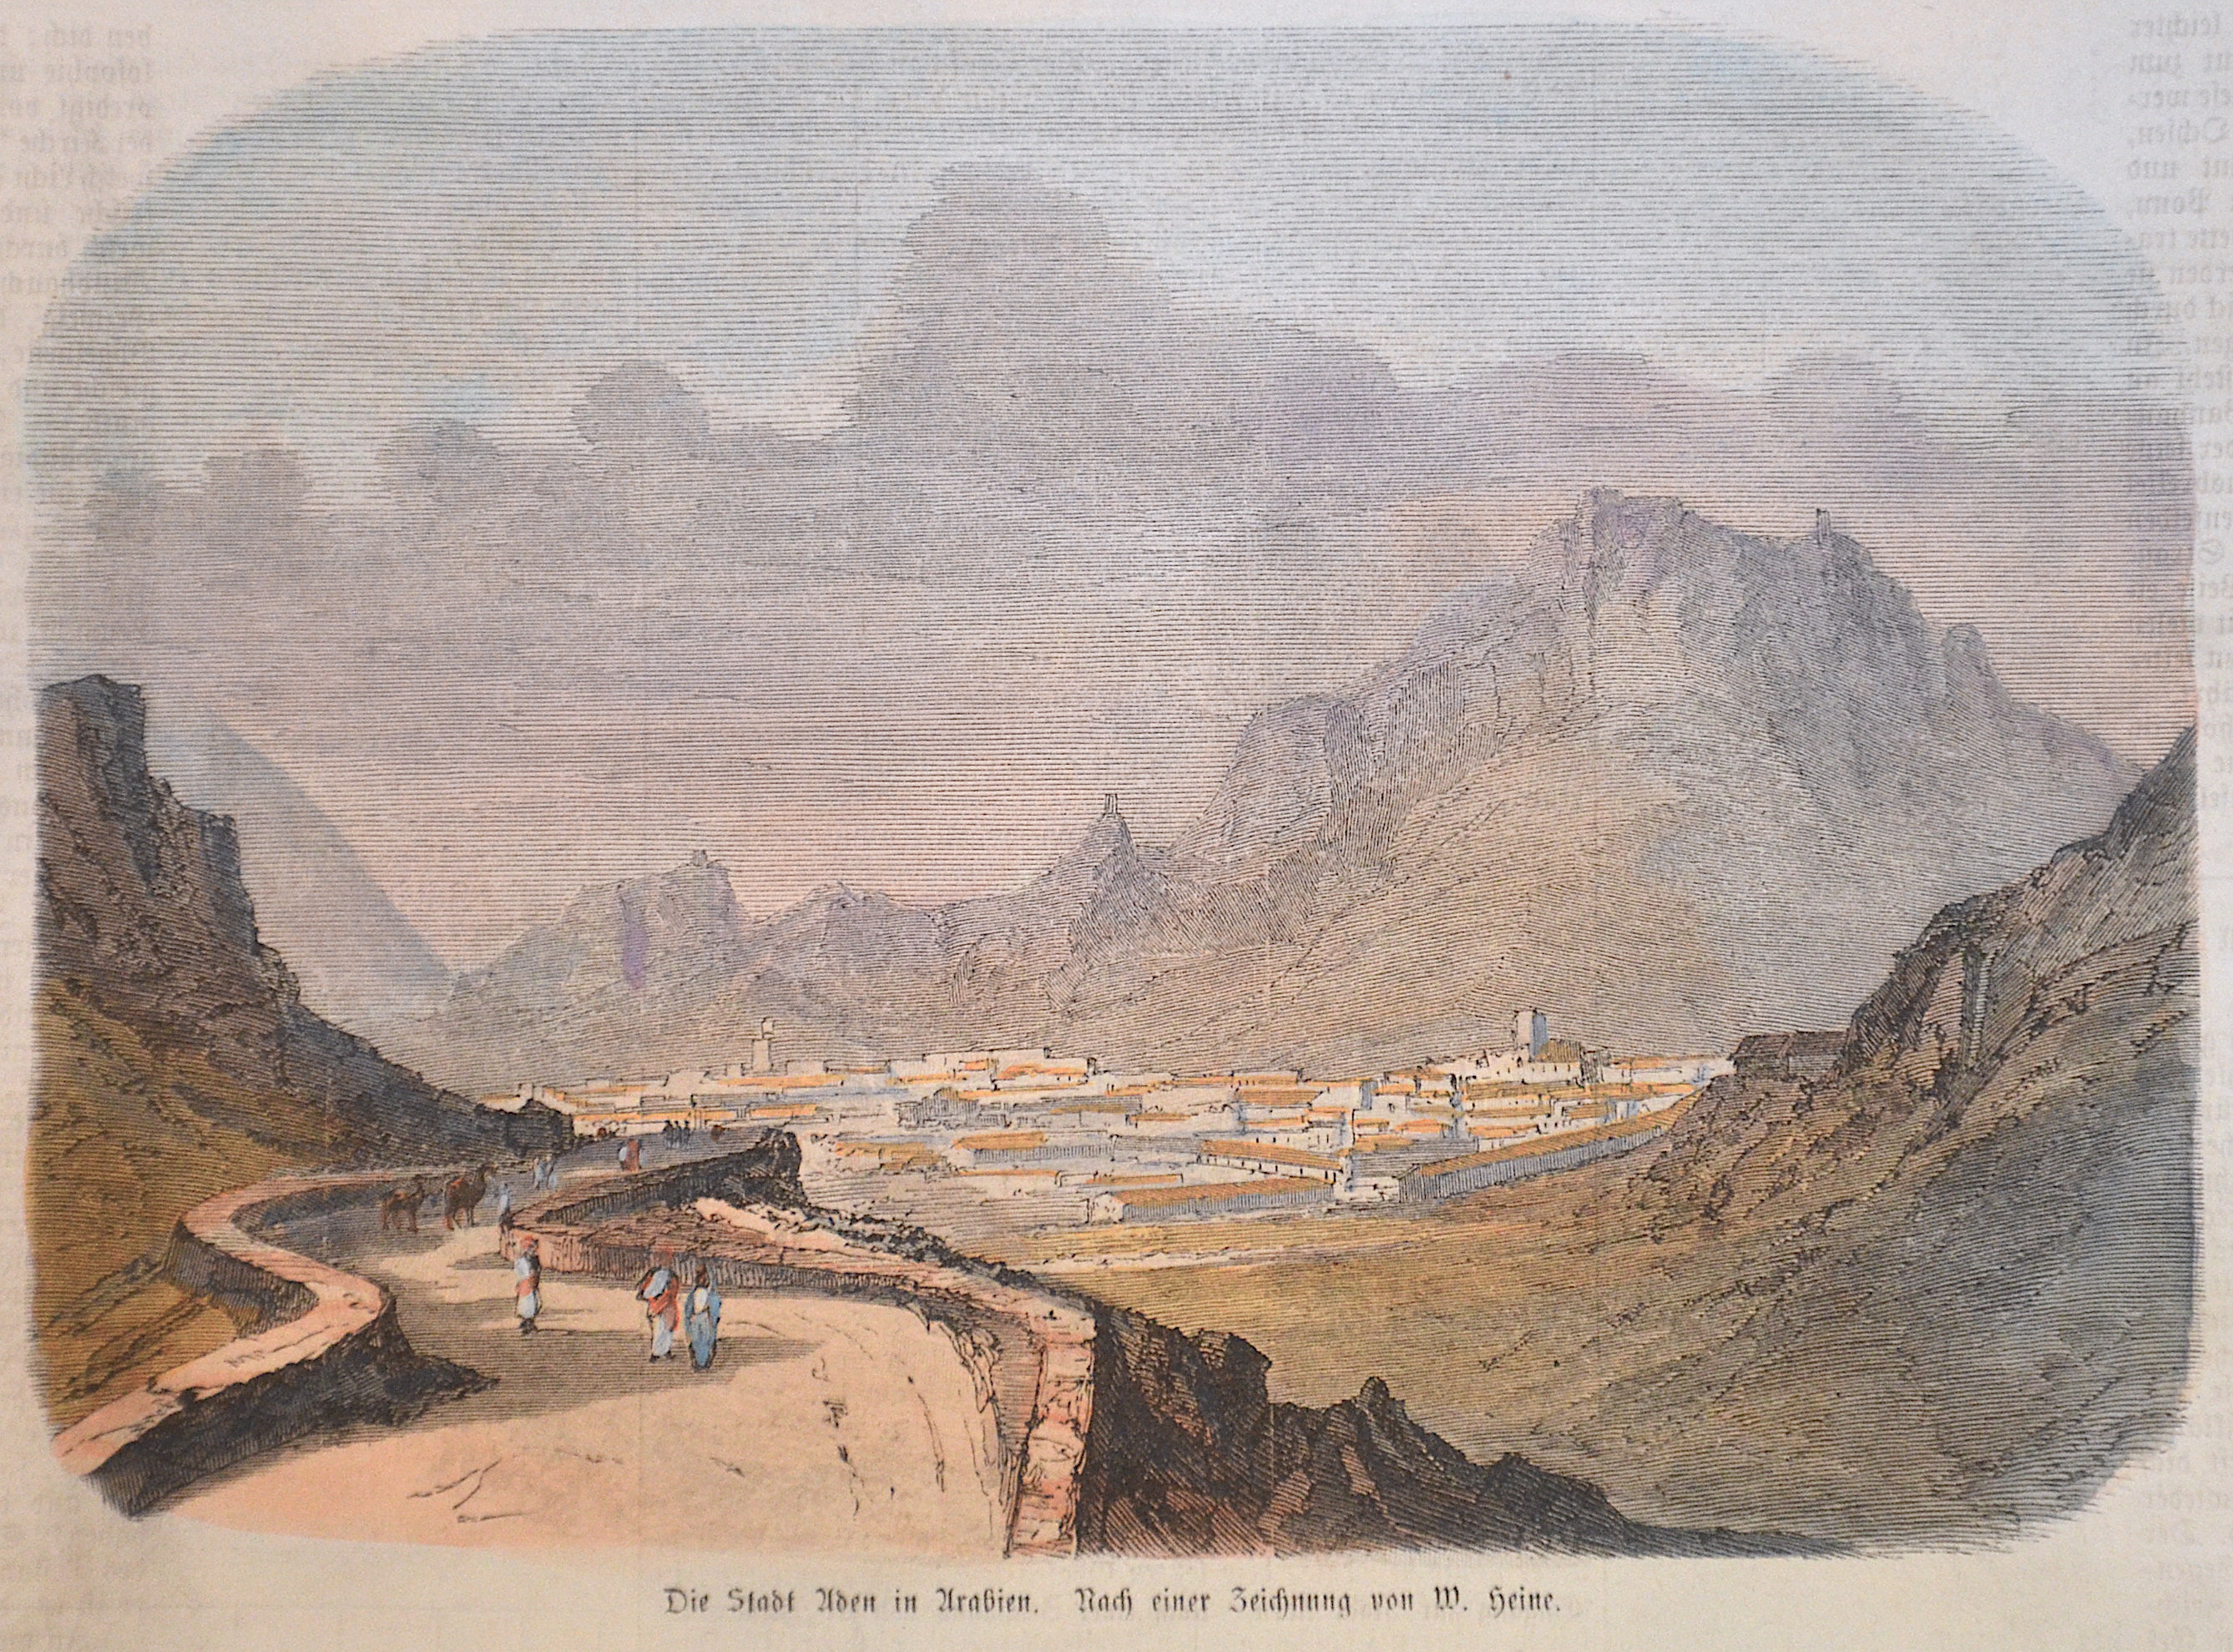 Heine  Die Stadt Aden in Arabien. Nach einer Zeichnung von W. Heine.